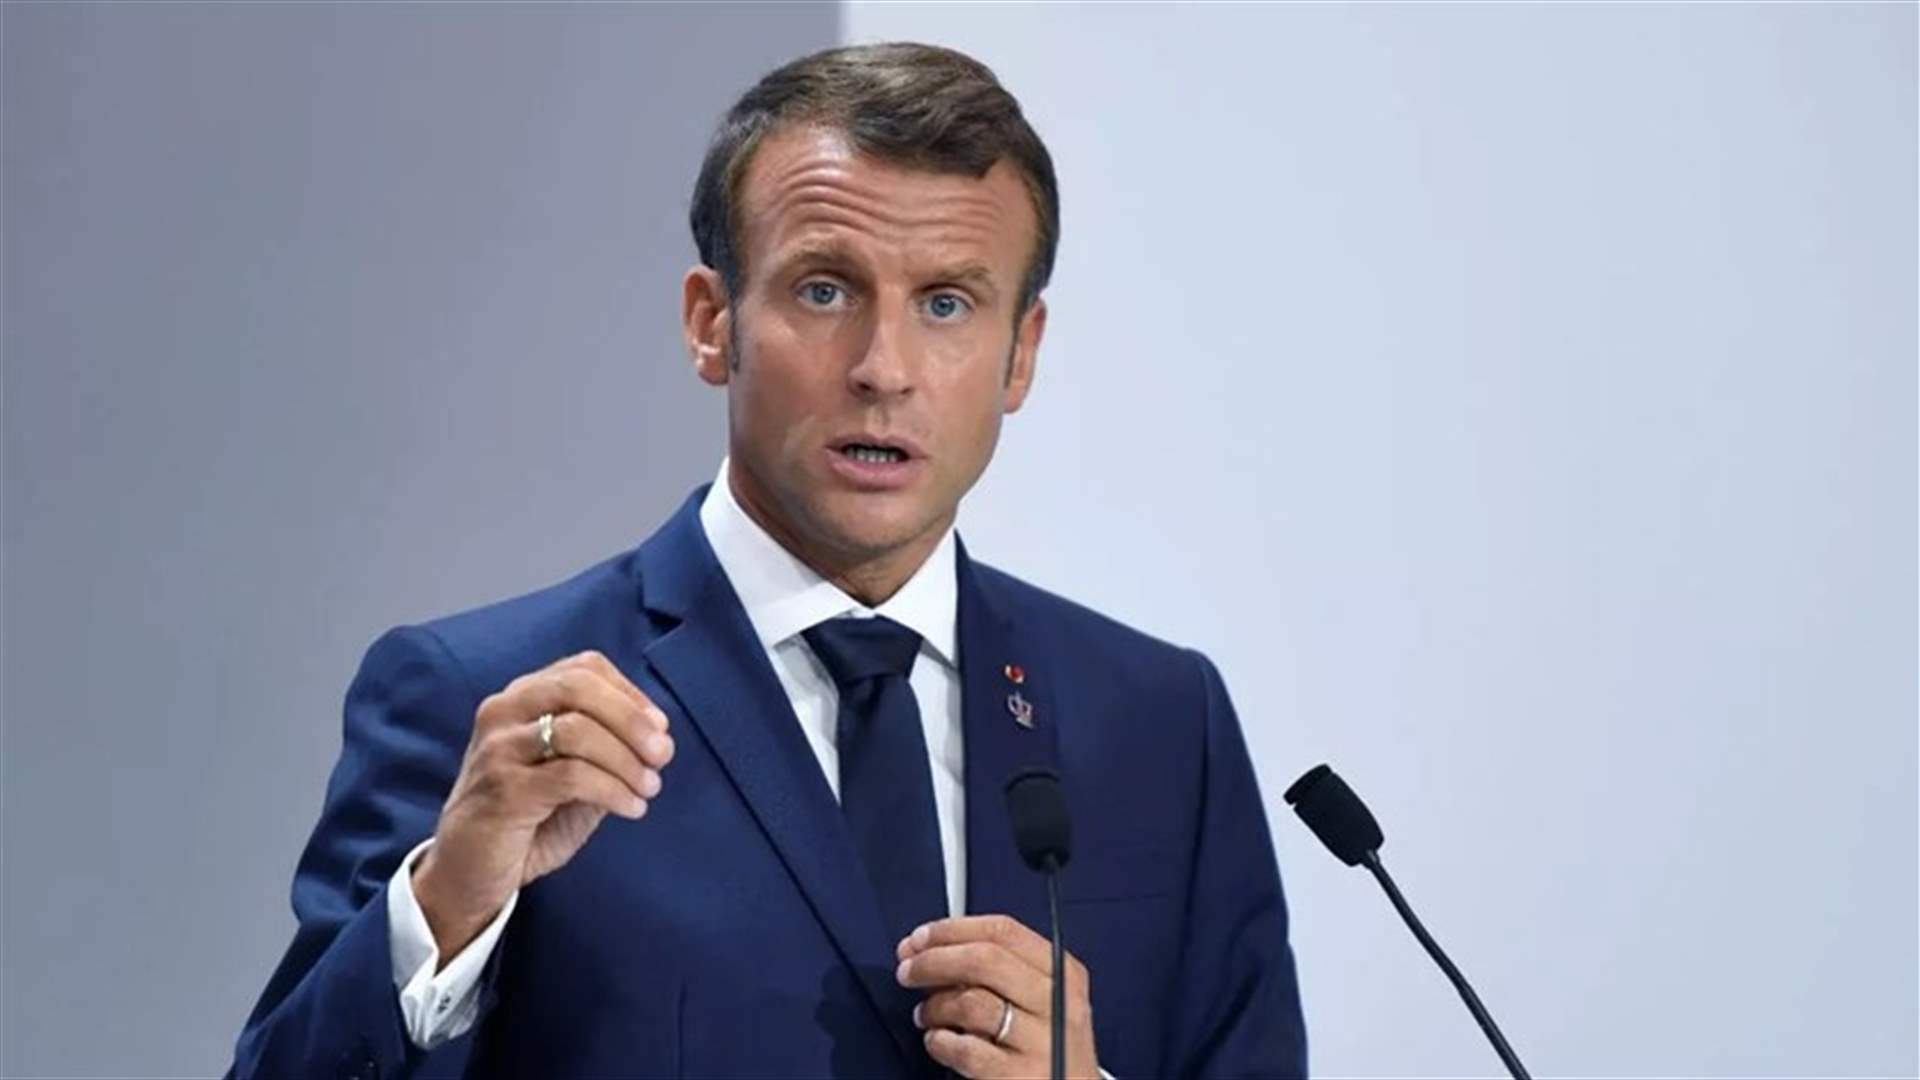 Macron Calls for Firmness in Banning Veils in Schools